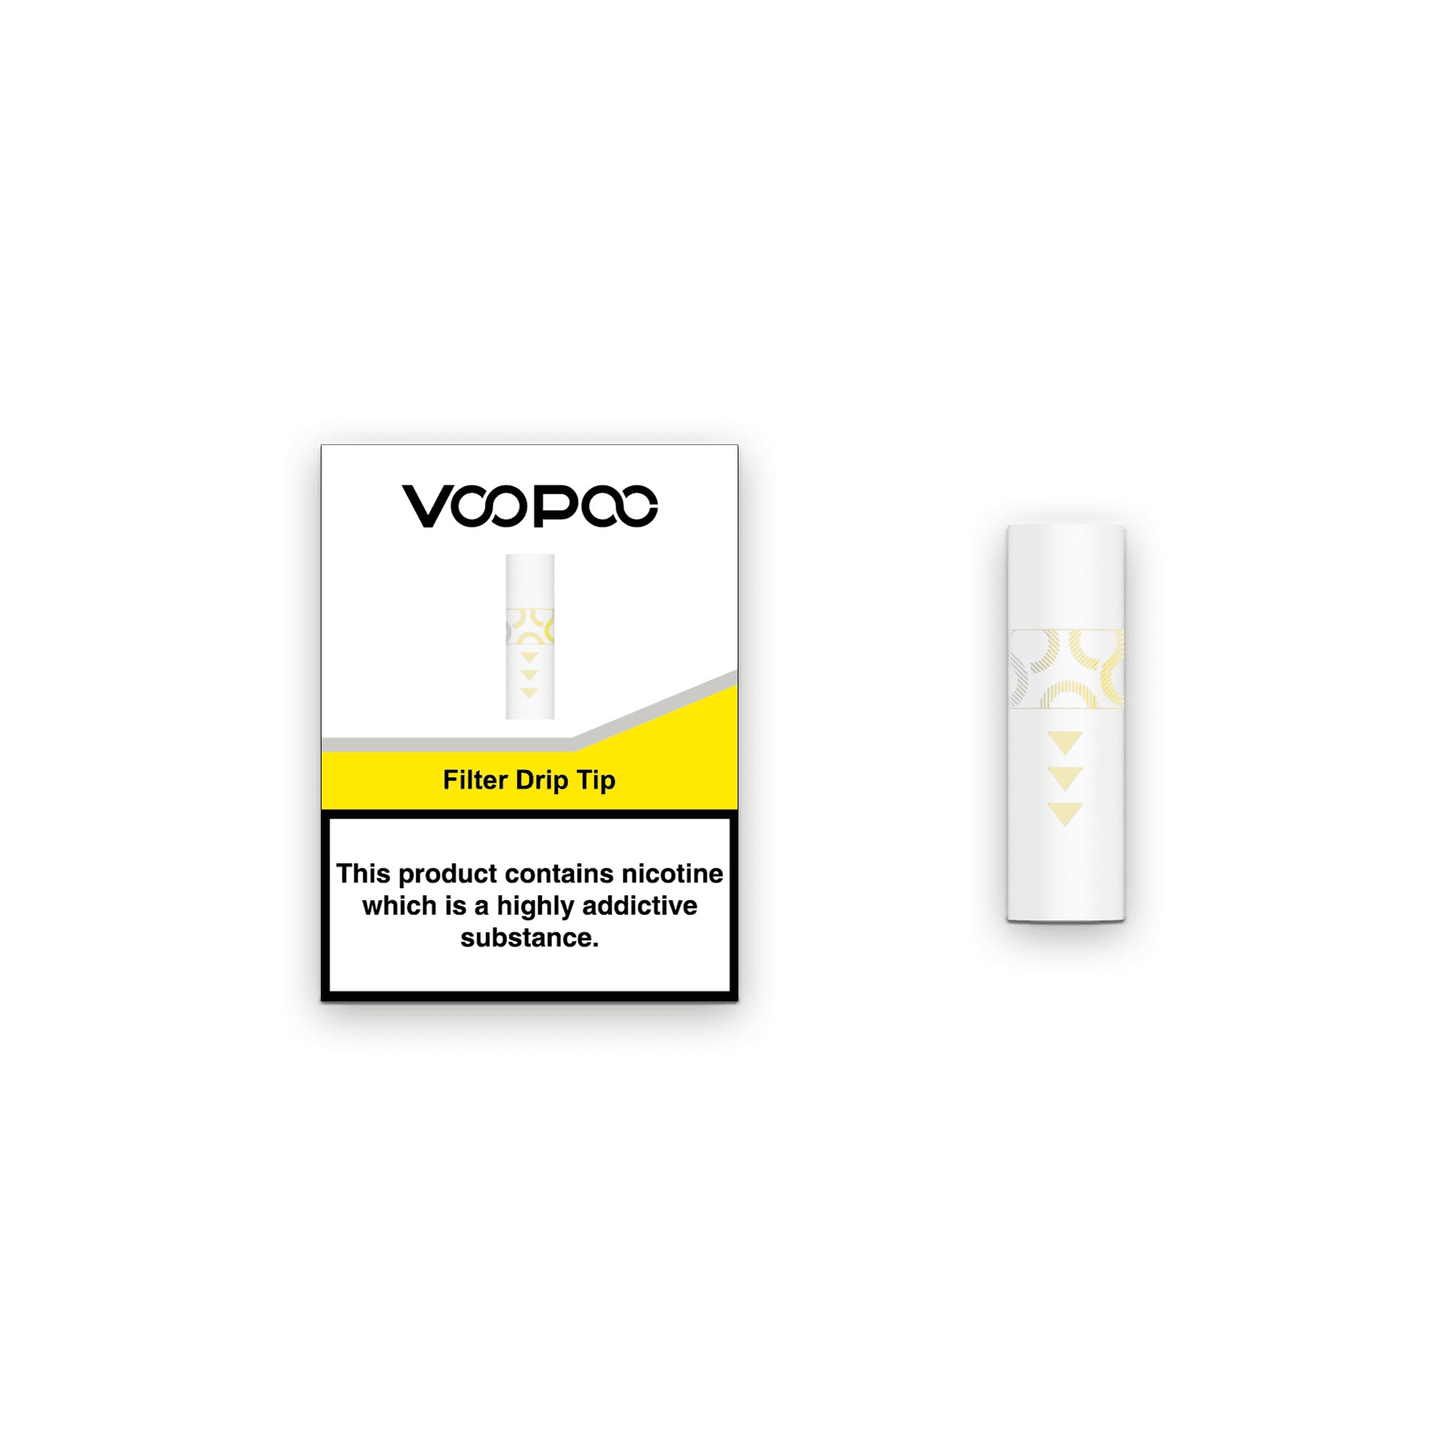 VOOPOO Filter Drip Tip (20/pack)